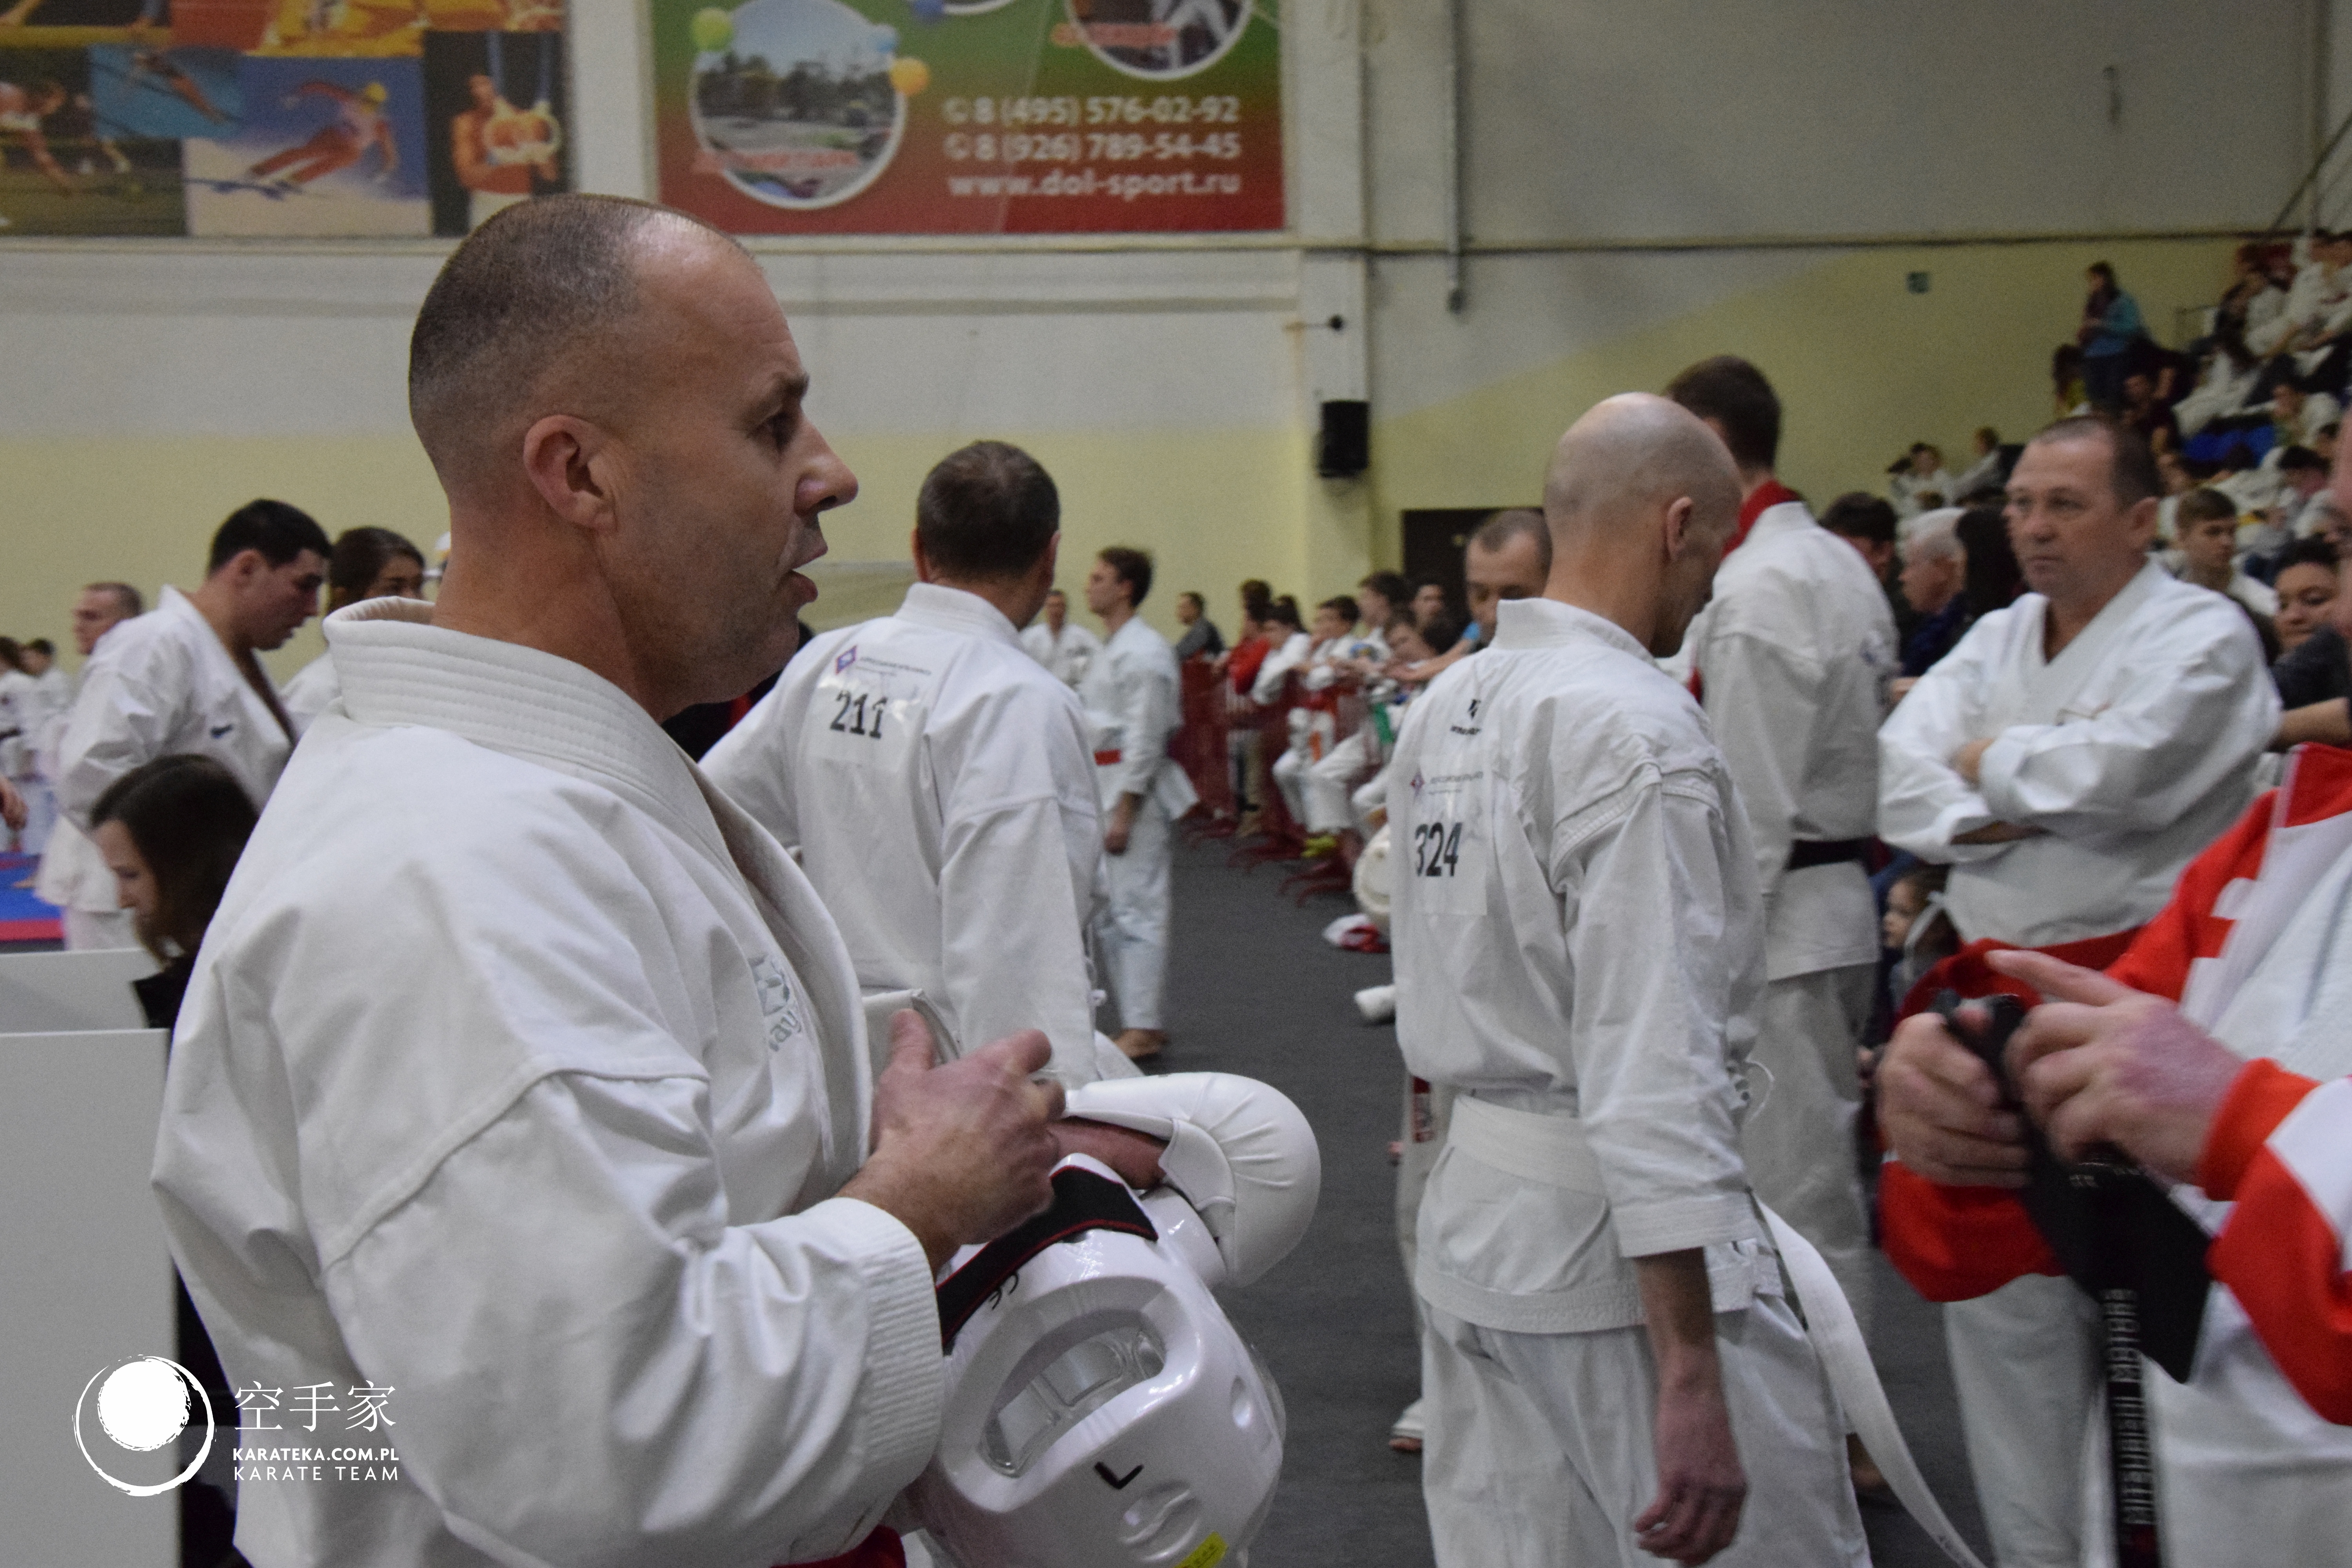 9 Wszechrosyjskie Mistrzostwa Karate KWF